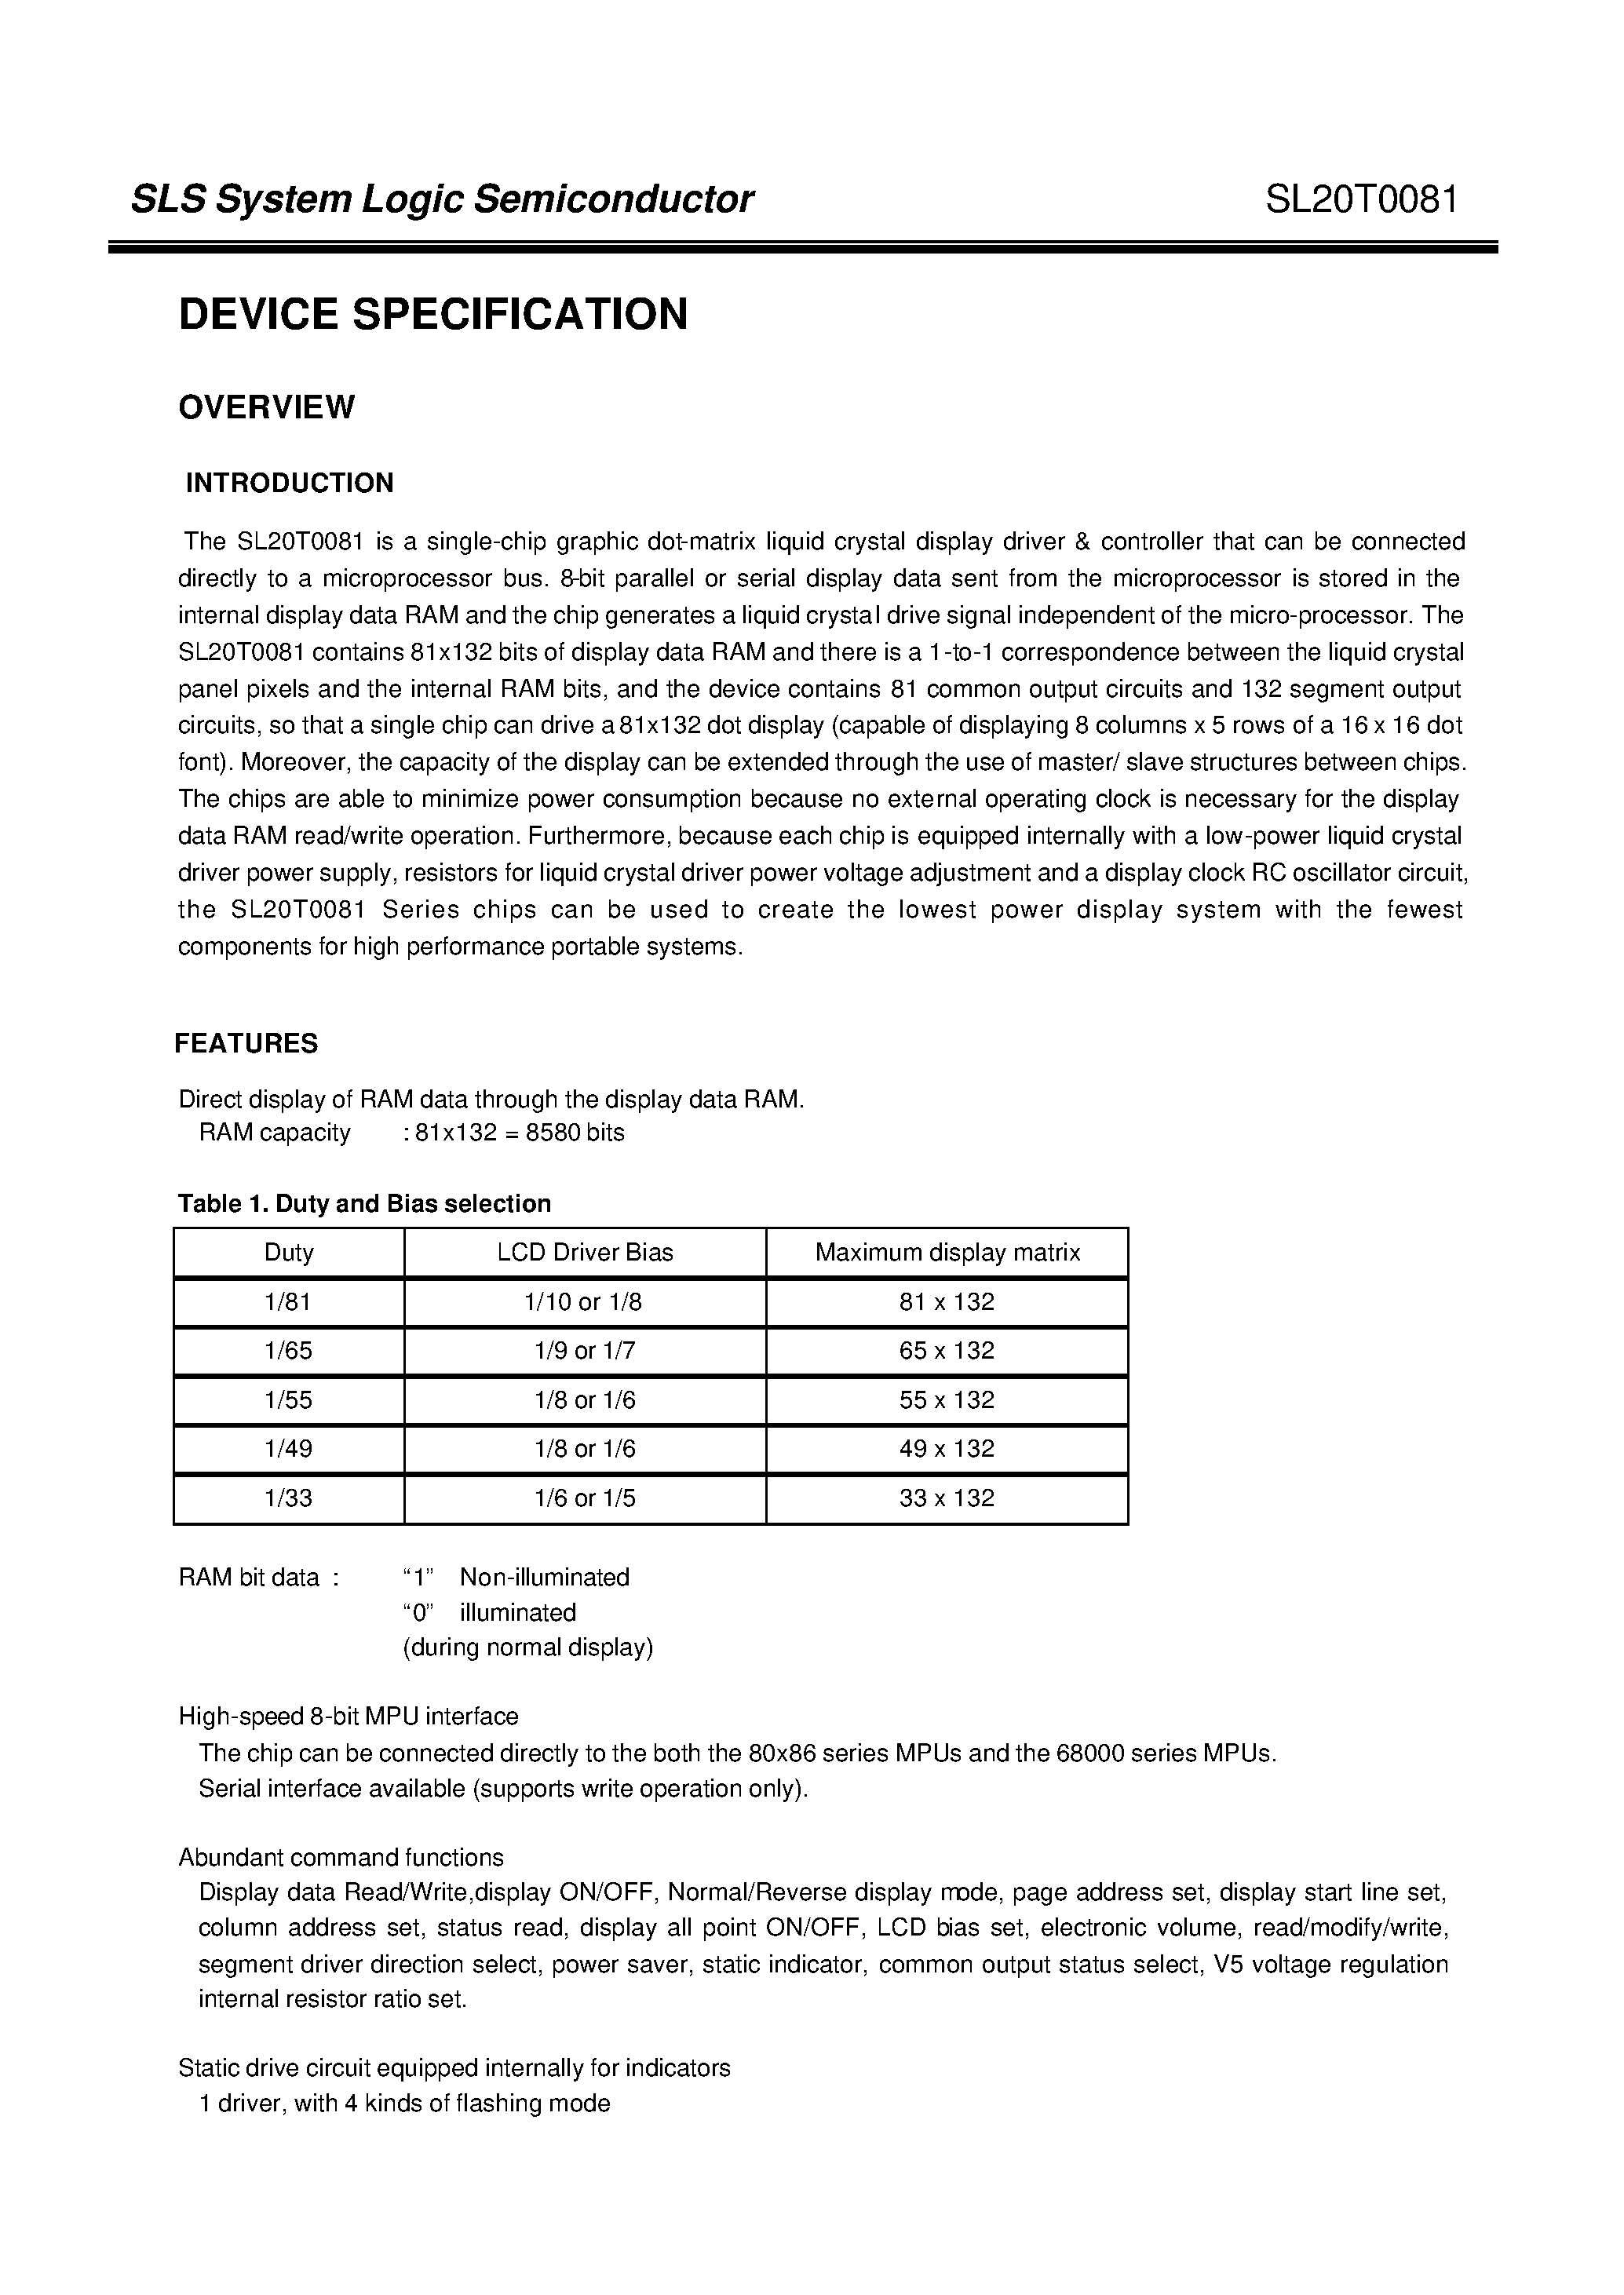 Даташит SL20T0081 - SLS System Logic Semiconductor страница 2